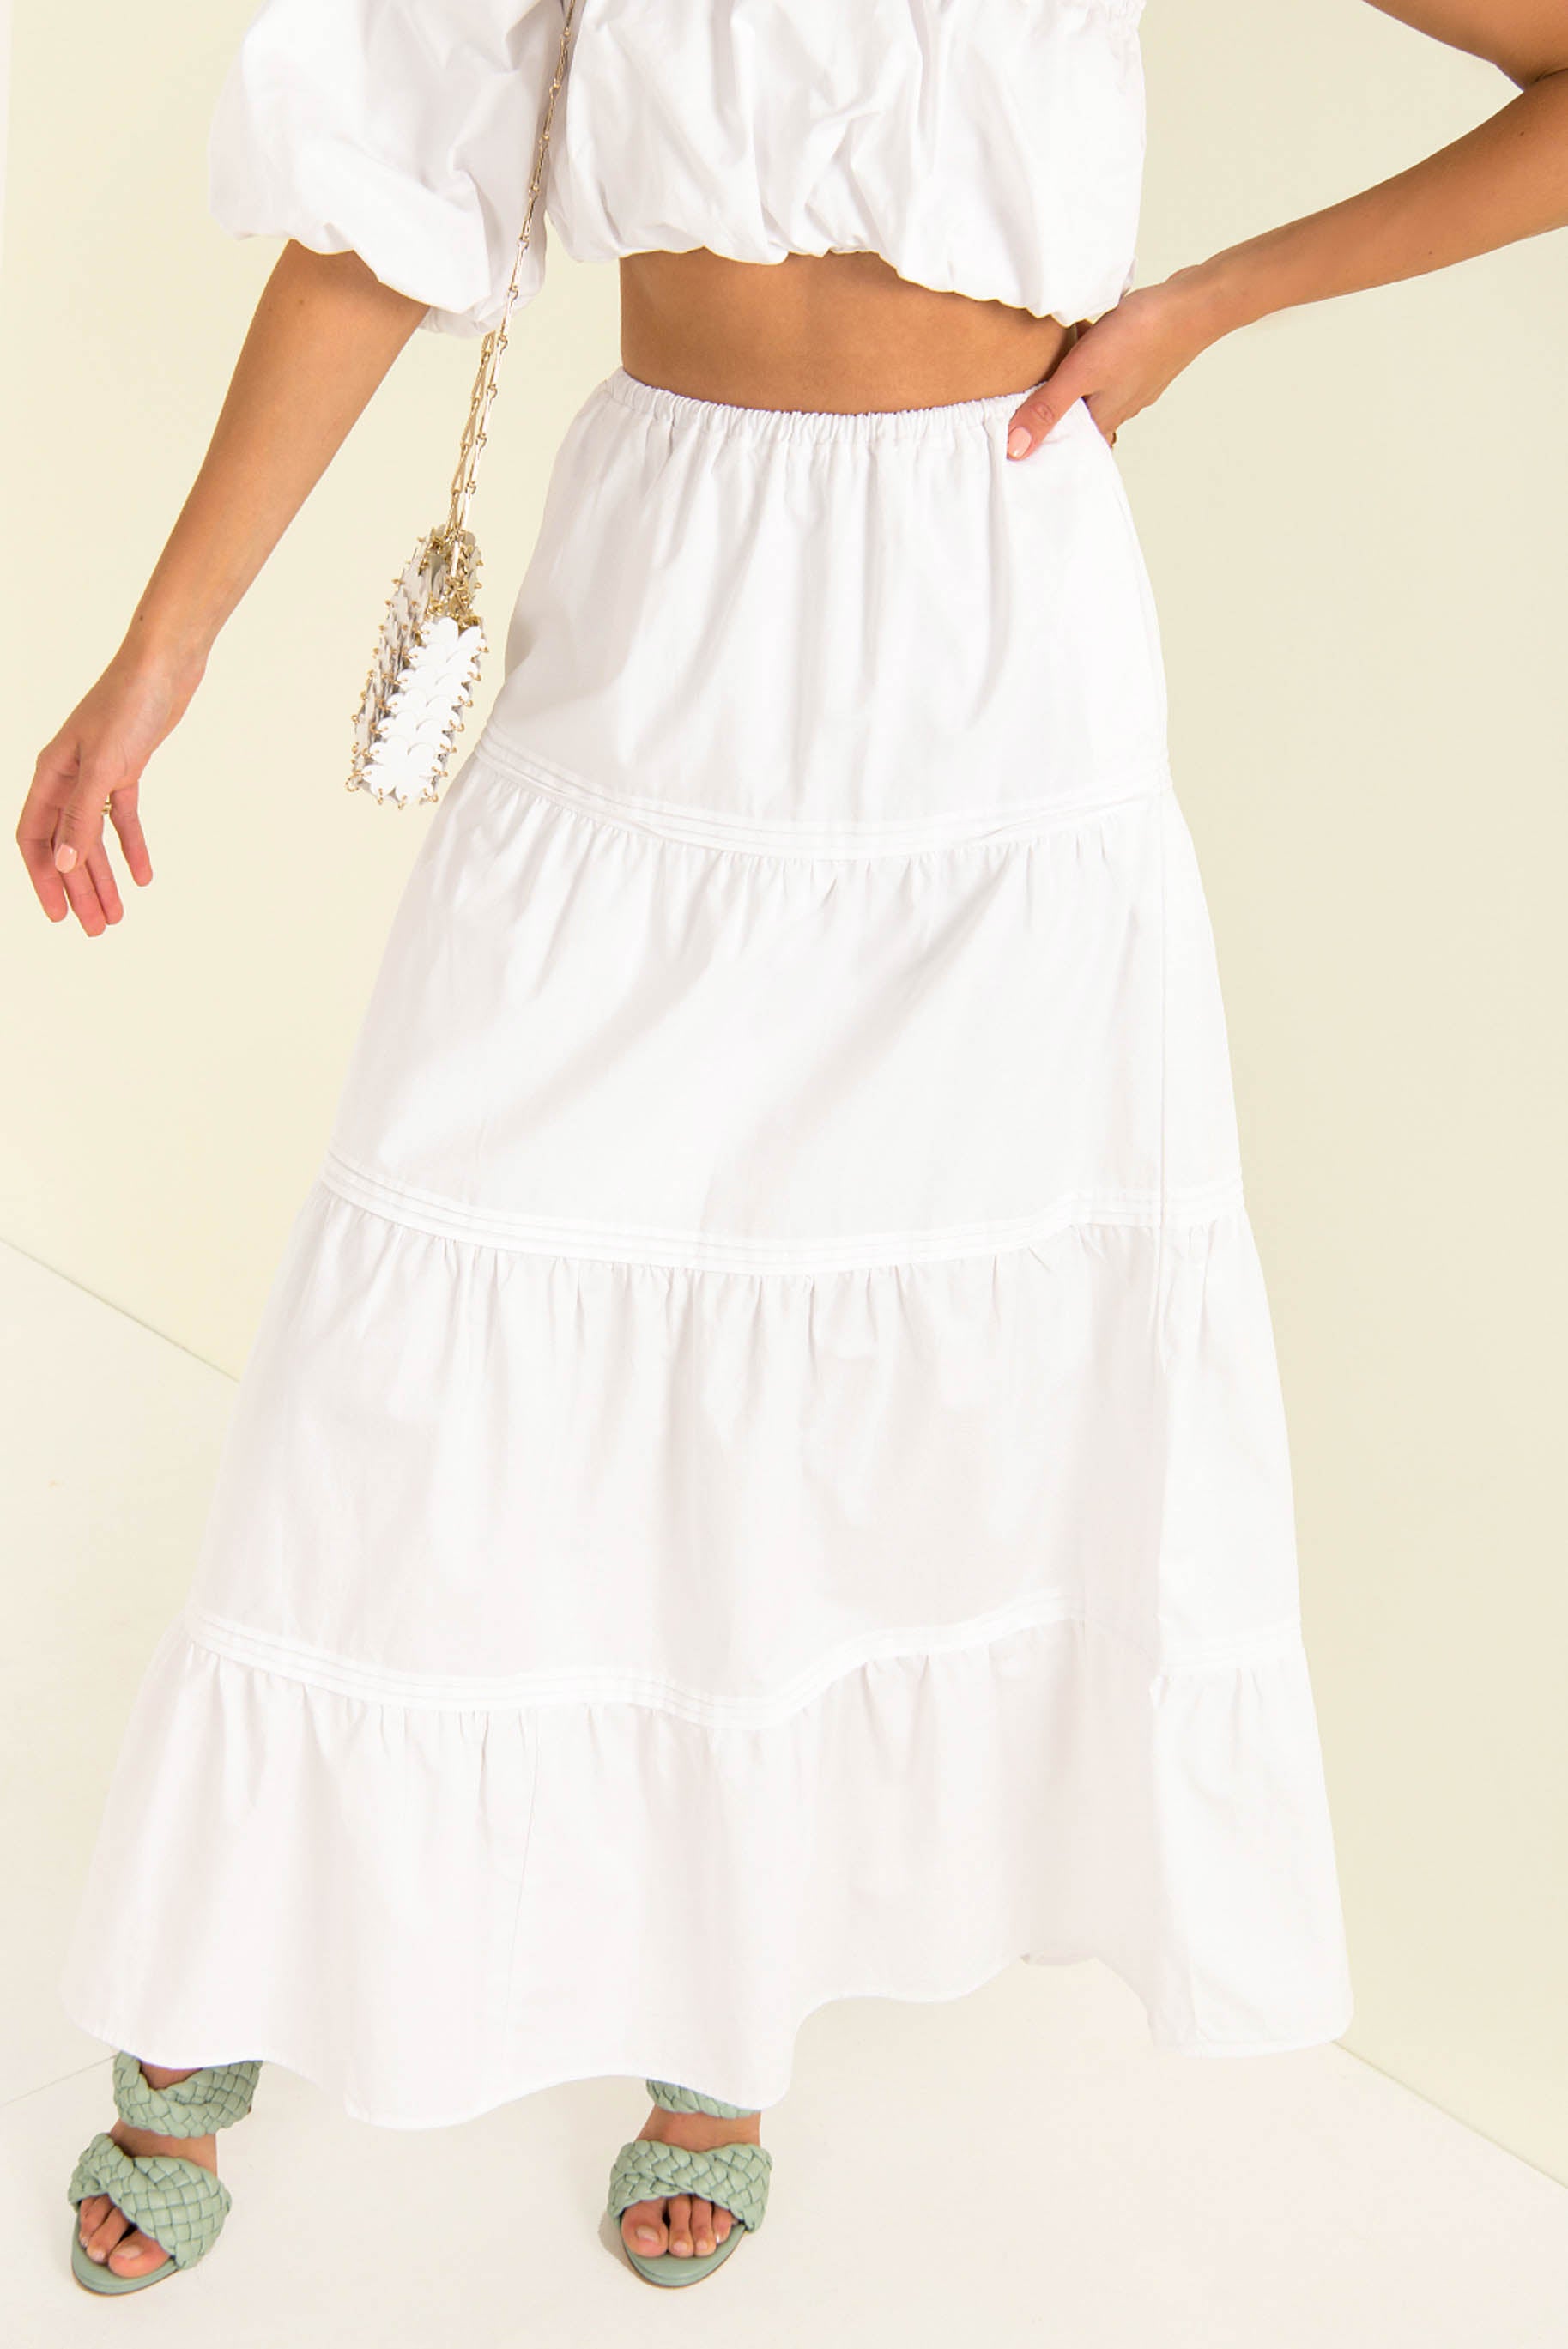 Matilda Maxi Skirt / White